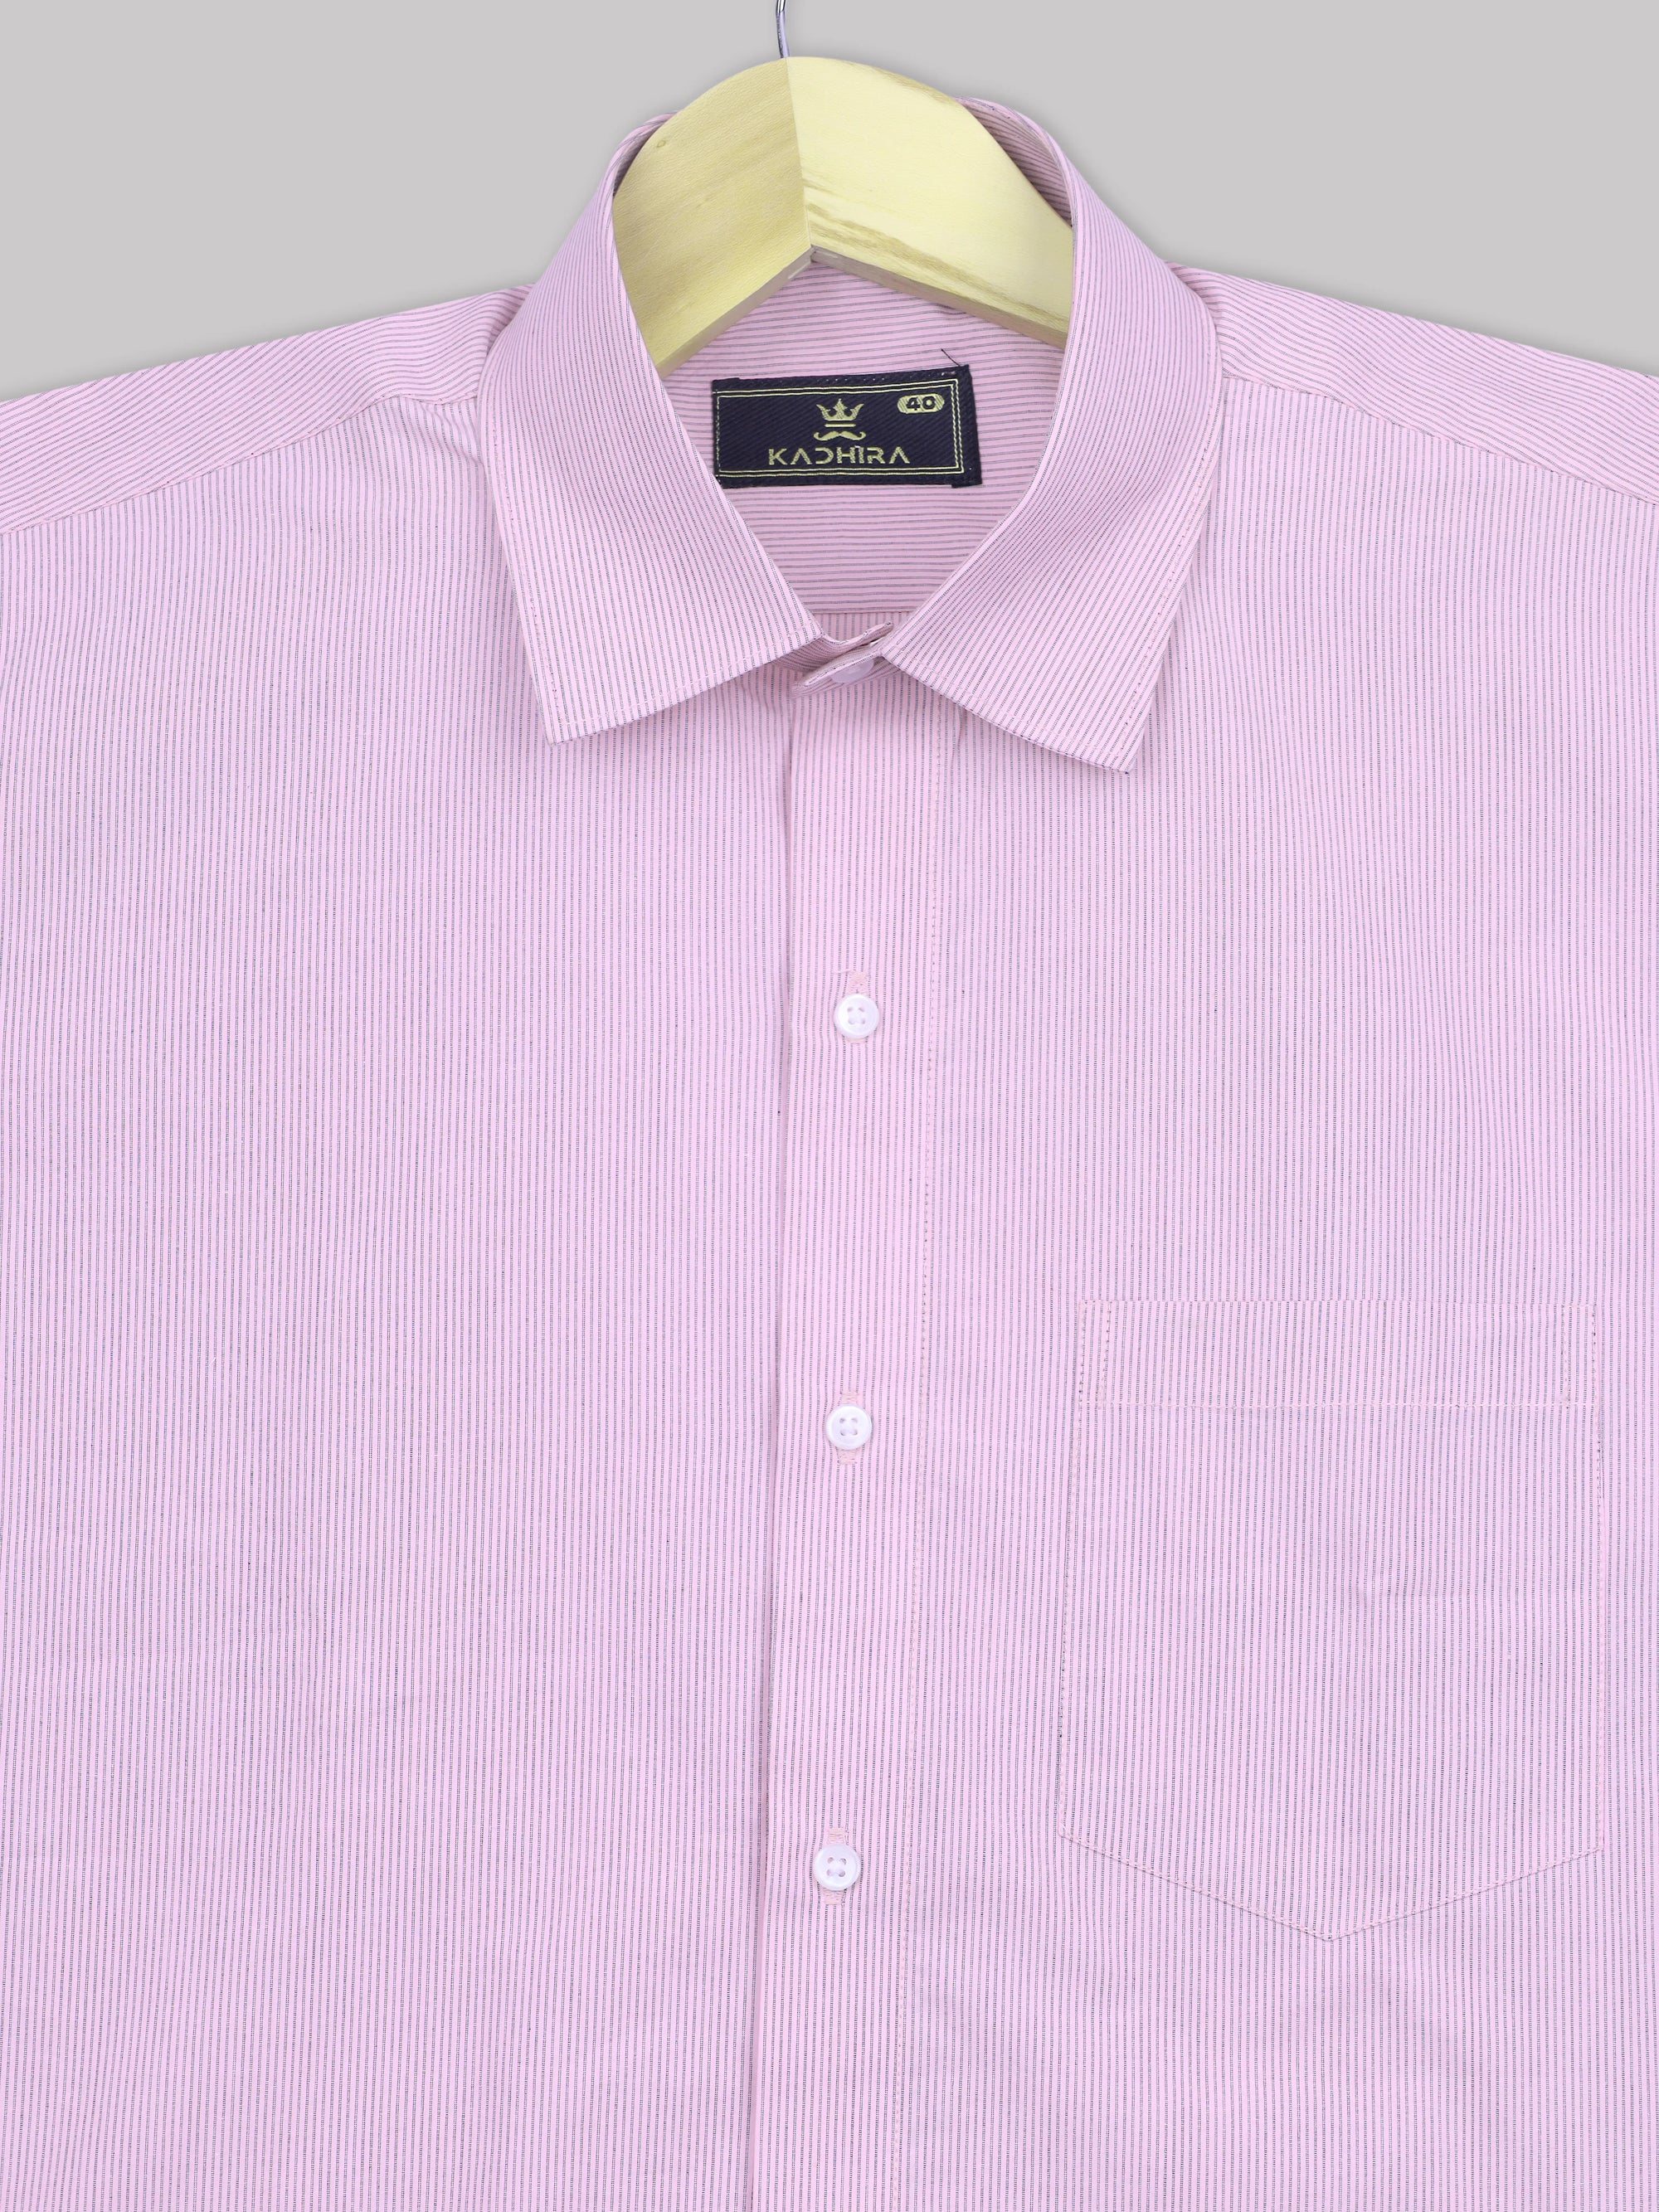 Pale Lavender With Black Chalk Stripes Premium Cotton Shirt